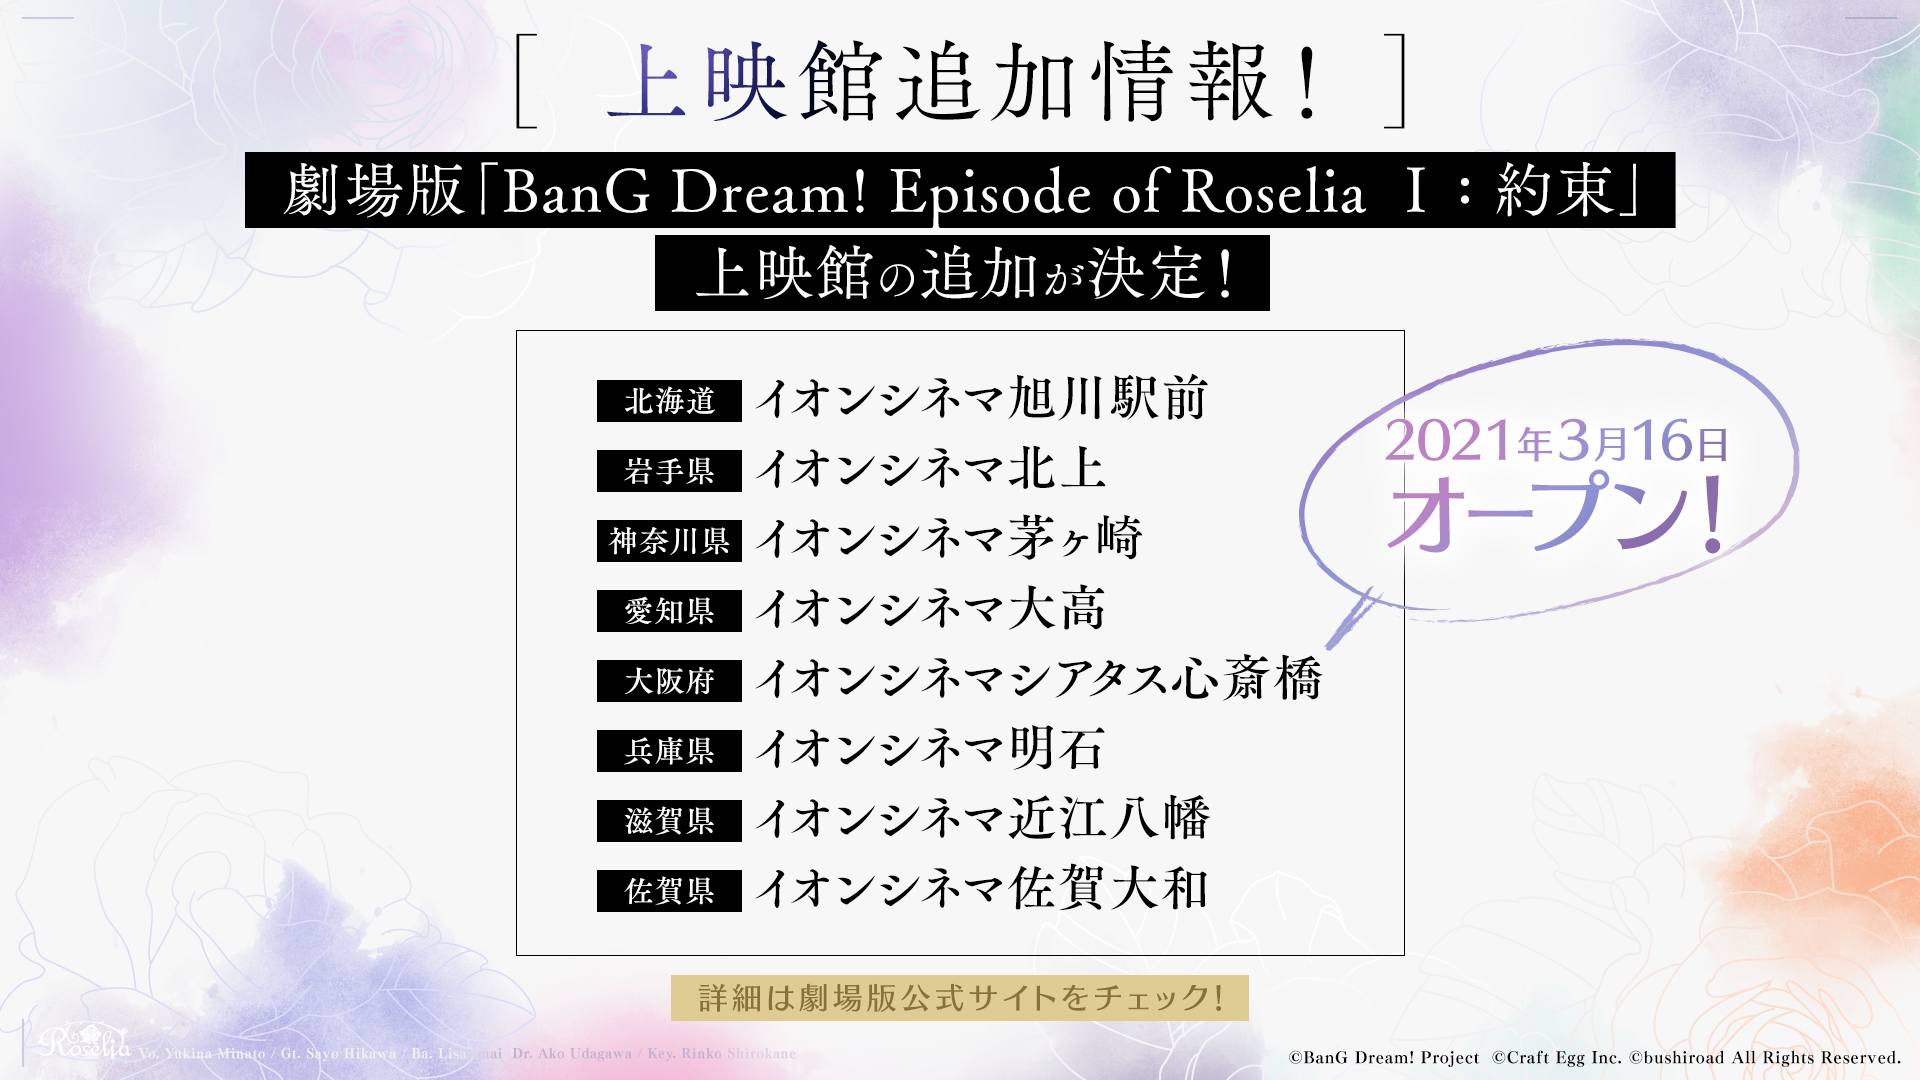 劇場版 Bang Dream Episode Of Roselia 約束 劇場版作品関連新情報まとめ 株式会社ブシロードのプレスリリース